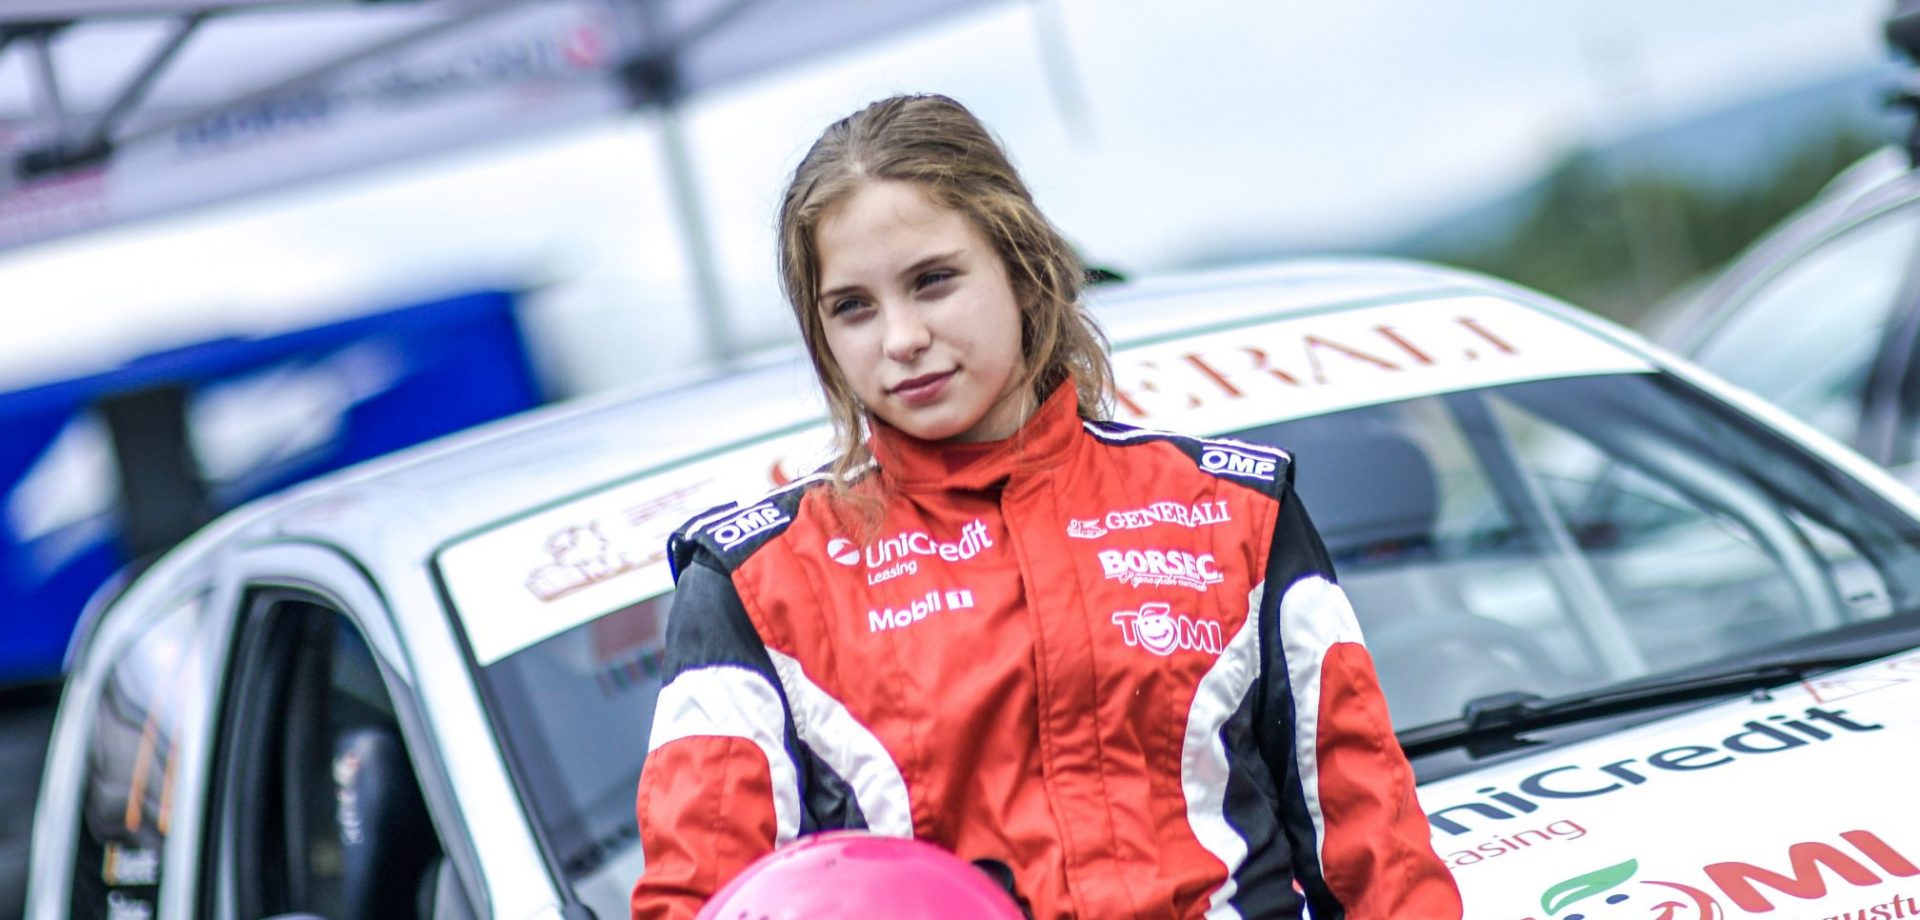 Vești bune în acest weekend: Alexandra Teslovan începe colaborarea cu Edwin Keleti Driving & Motorsport